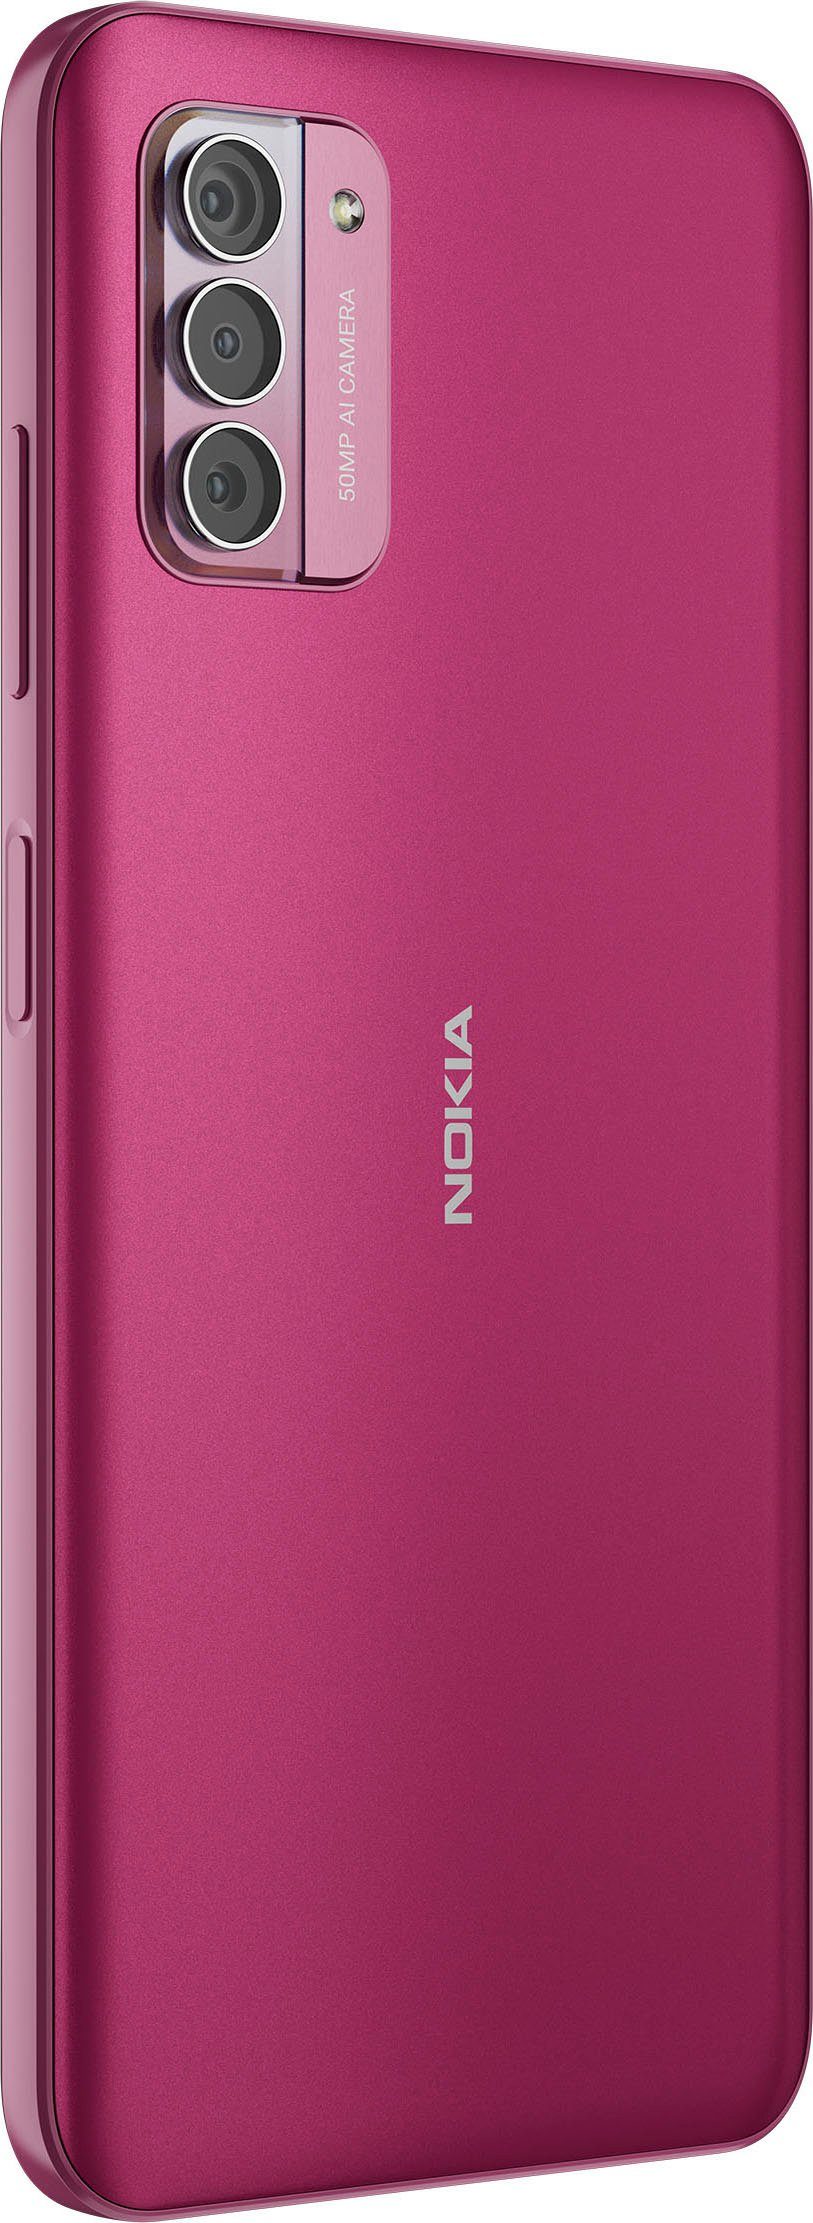 Kamera) GB 50 MP Speicherplatz, G42 (16,9 cm/6,65 128 pink Zoll, Smartphone Nokia